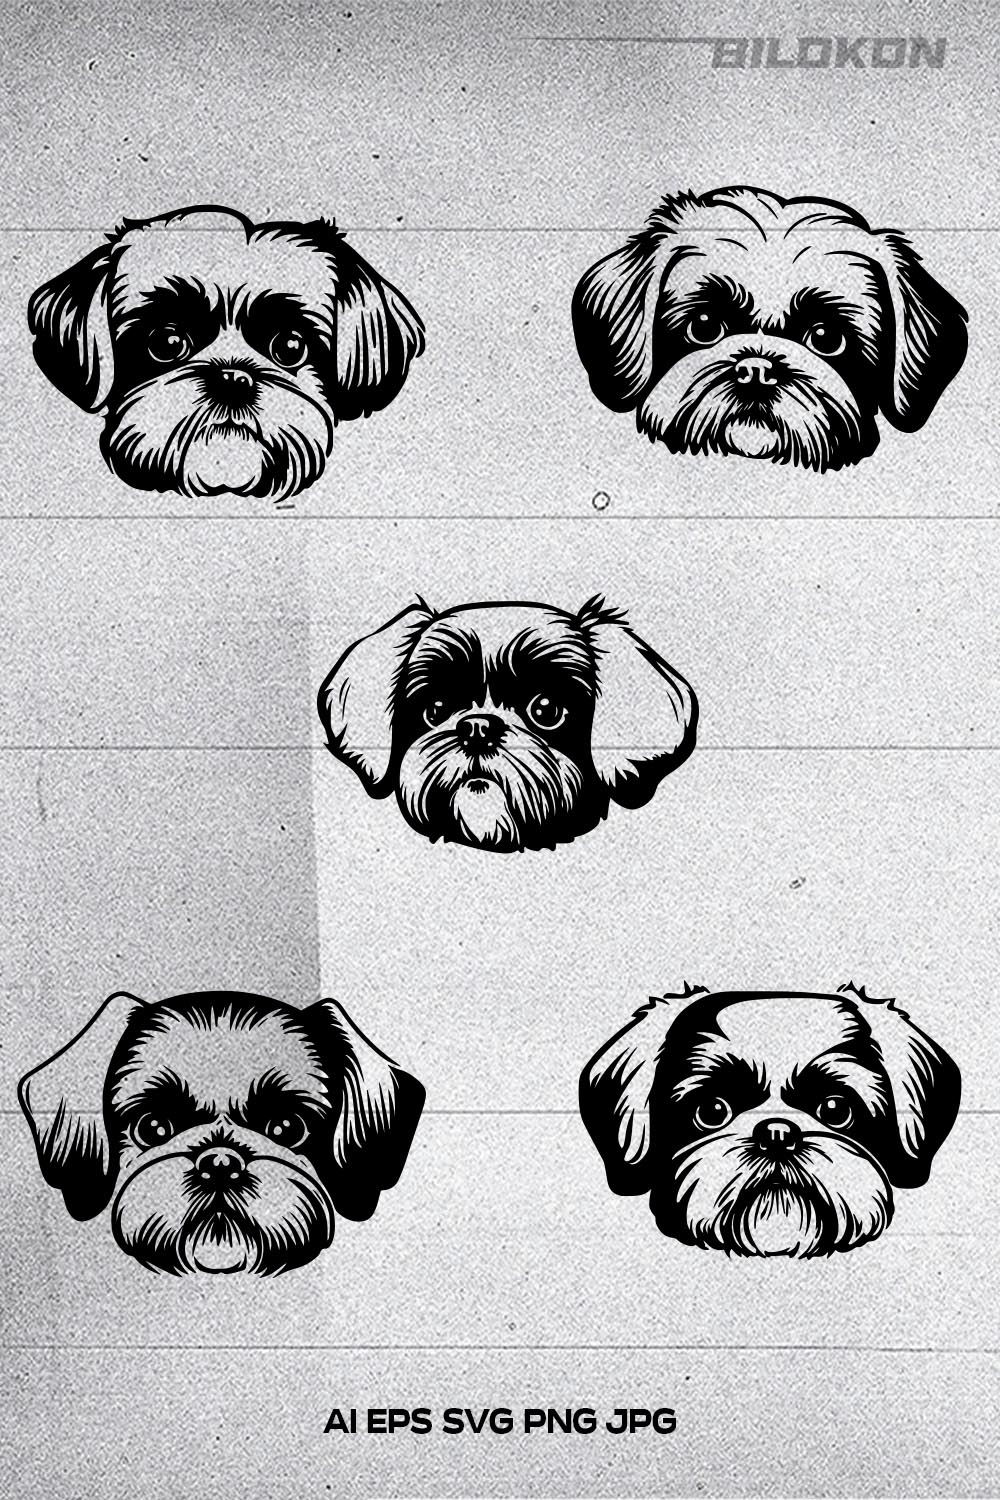 Shih tzu dog face , SVG, Vector, Illustration pinterest preview image.